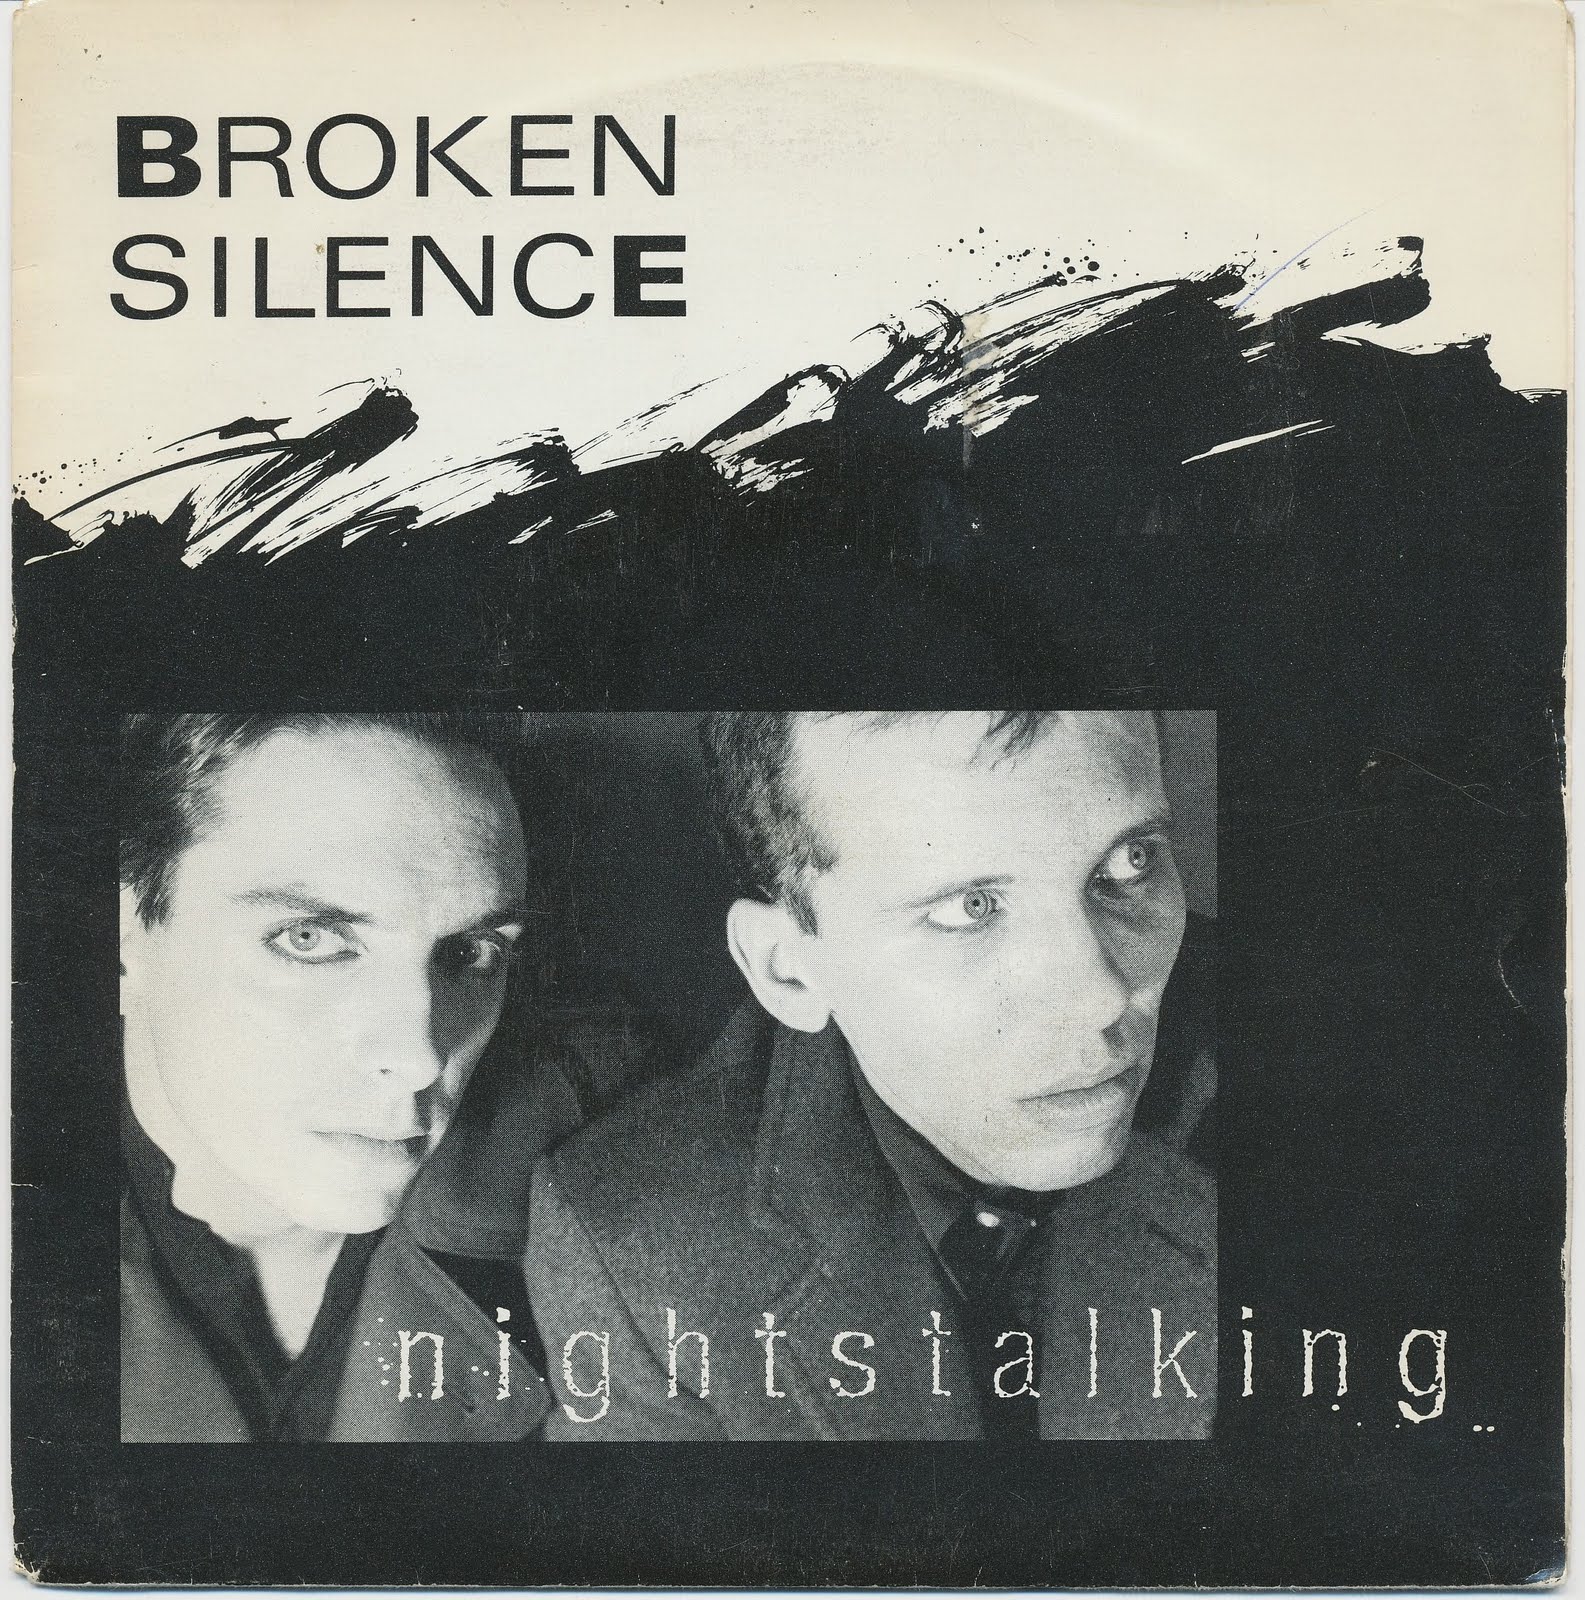 A broken Silence. A broken Silence группа. Песня is broken Silence. This broken Silence.